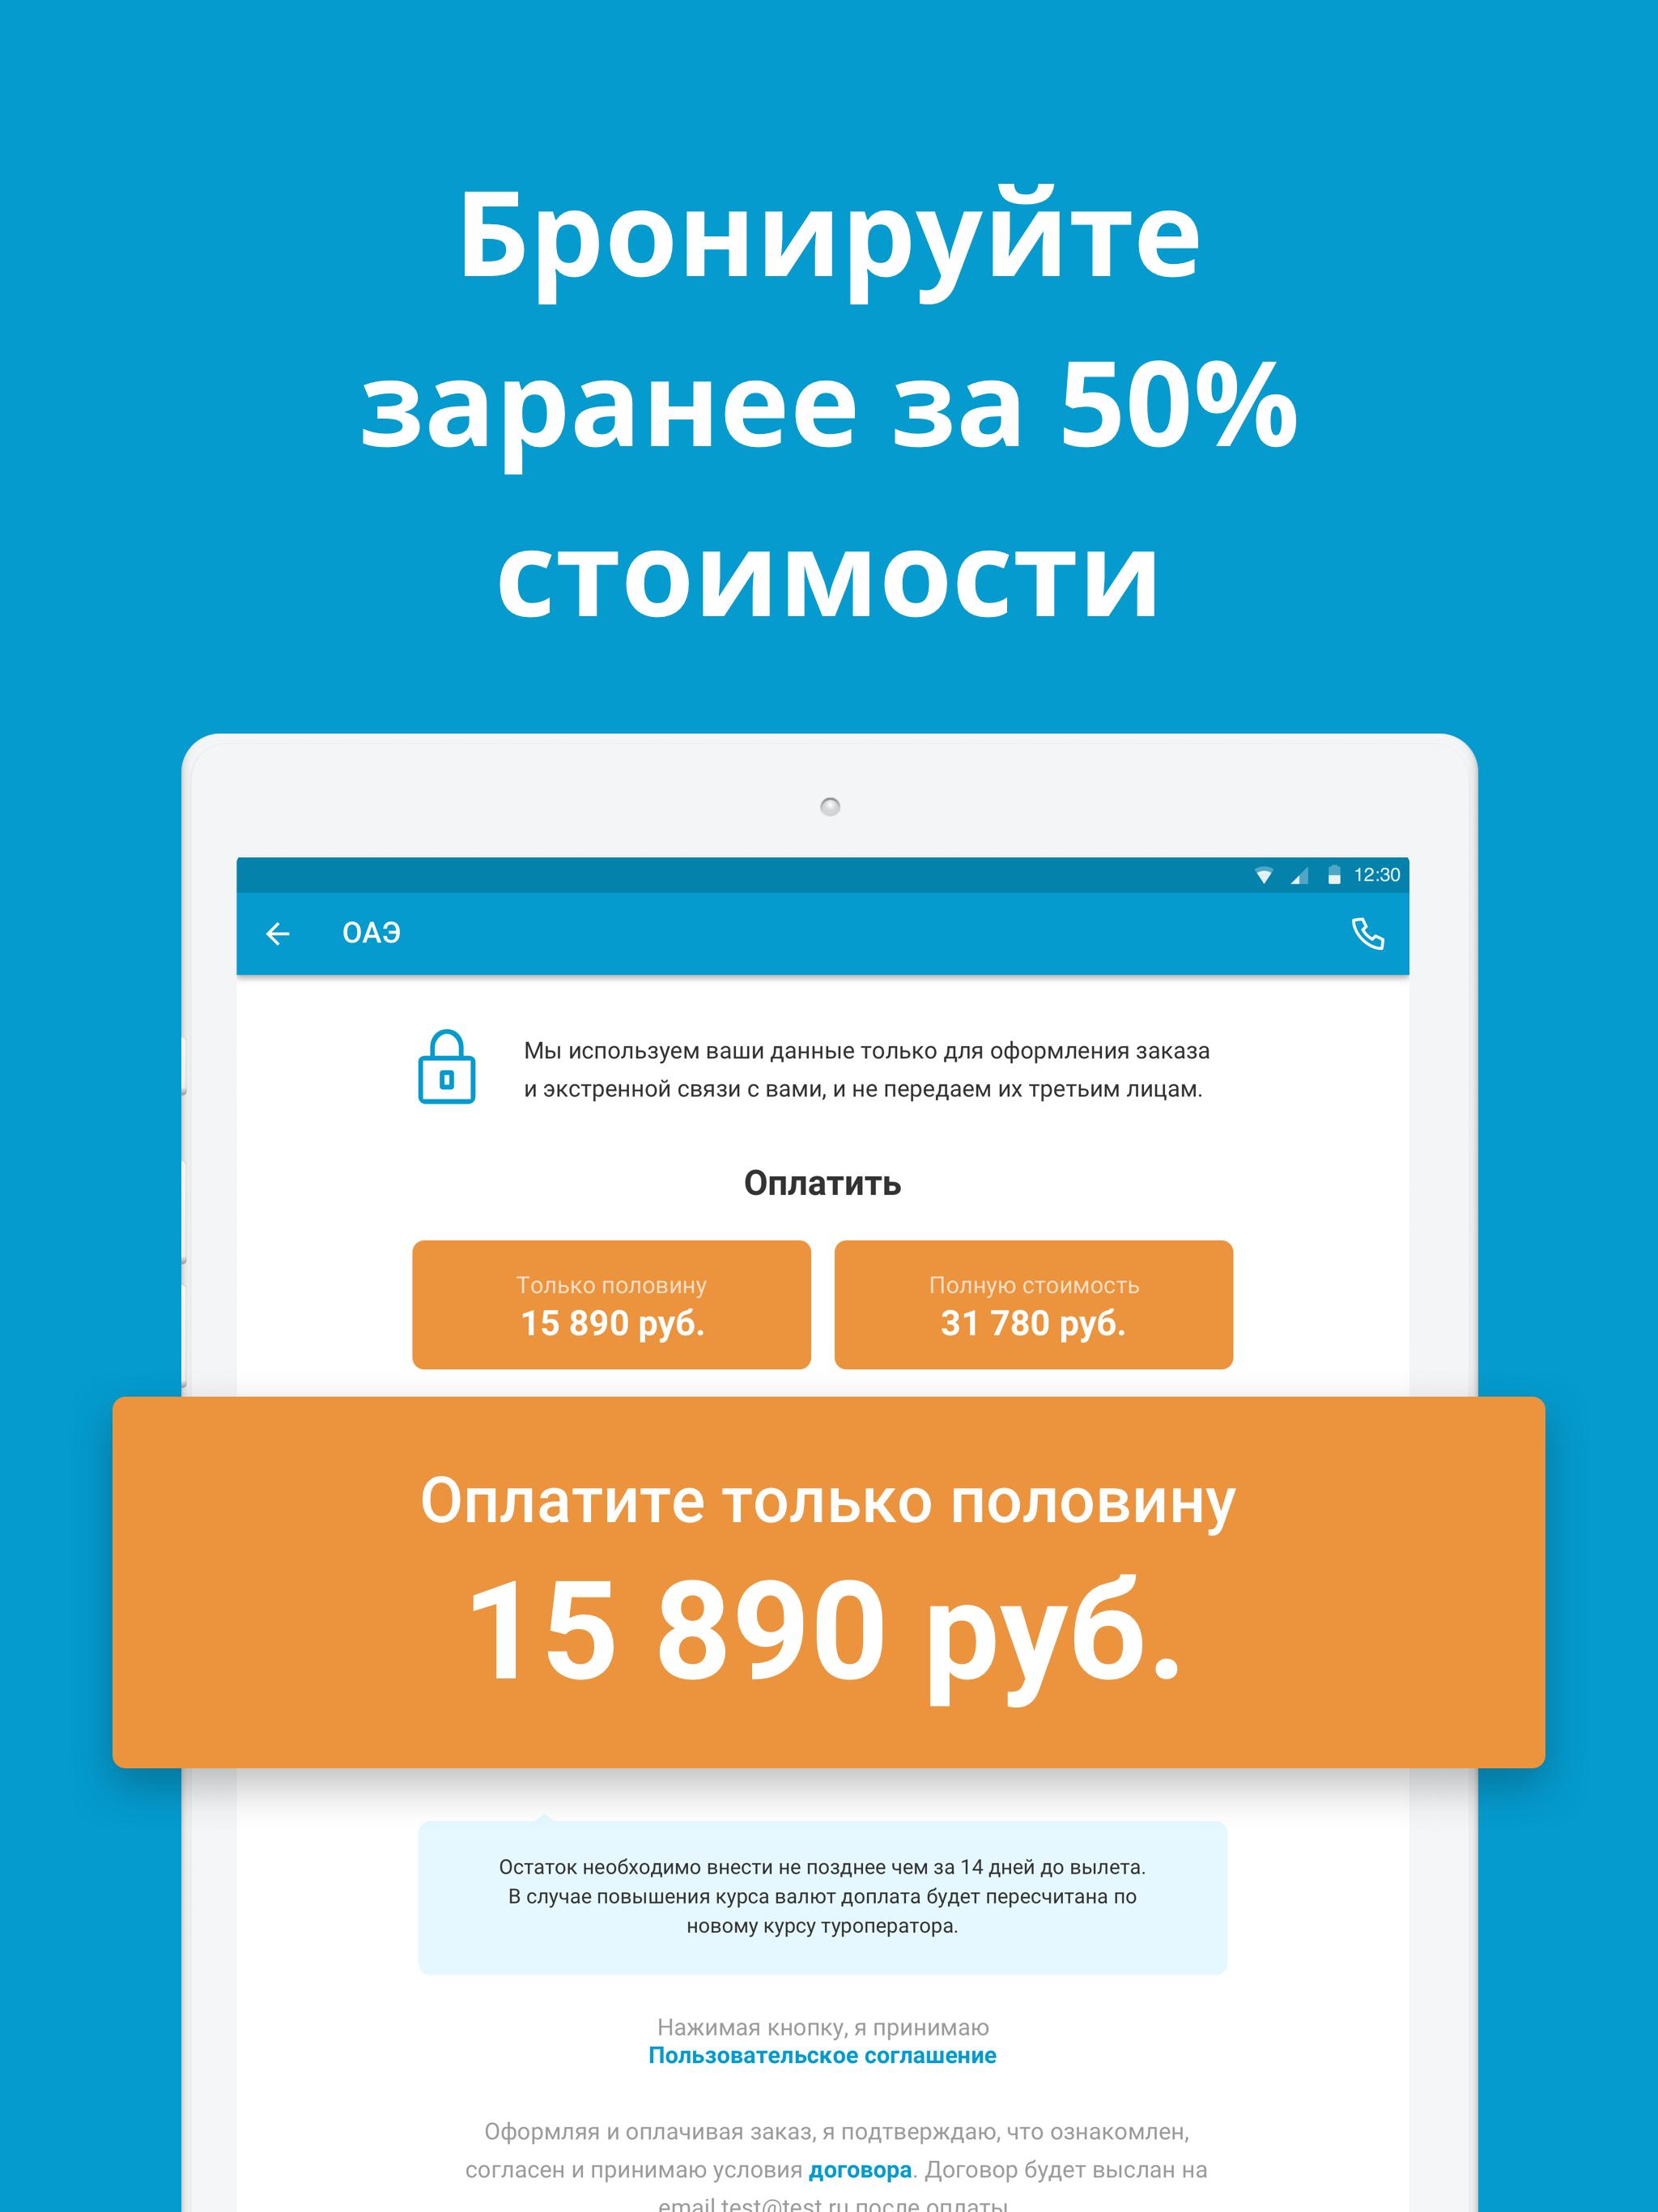 Travelata.ru Все горящие туры и путевки онлайн 3.6.7 Screenshot 8